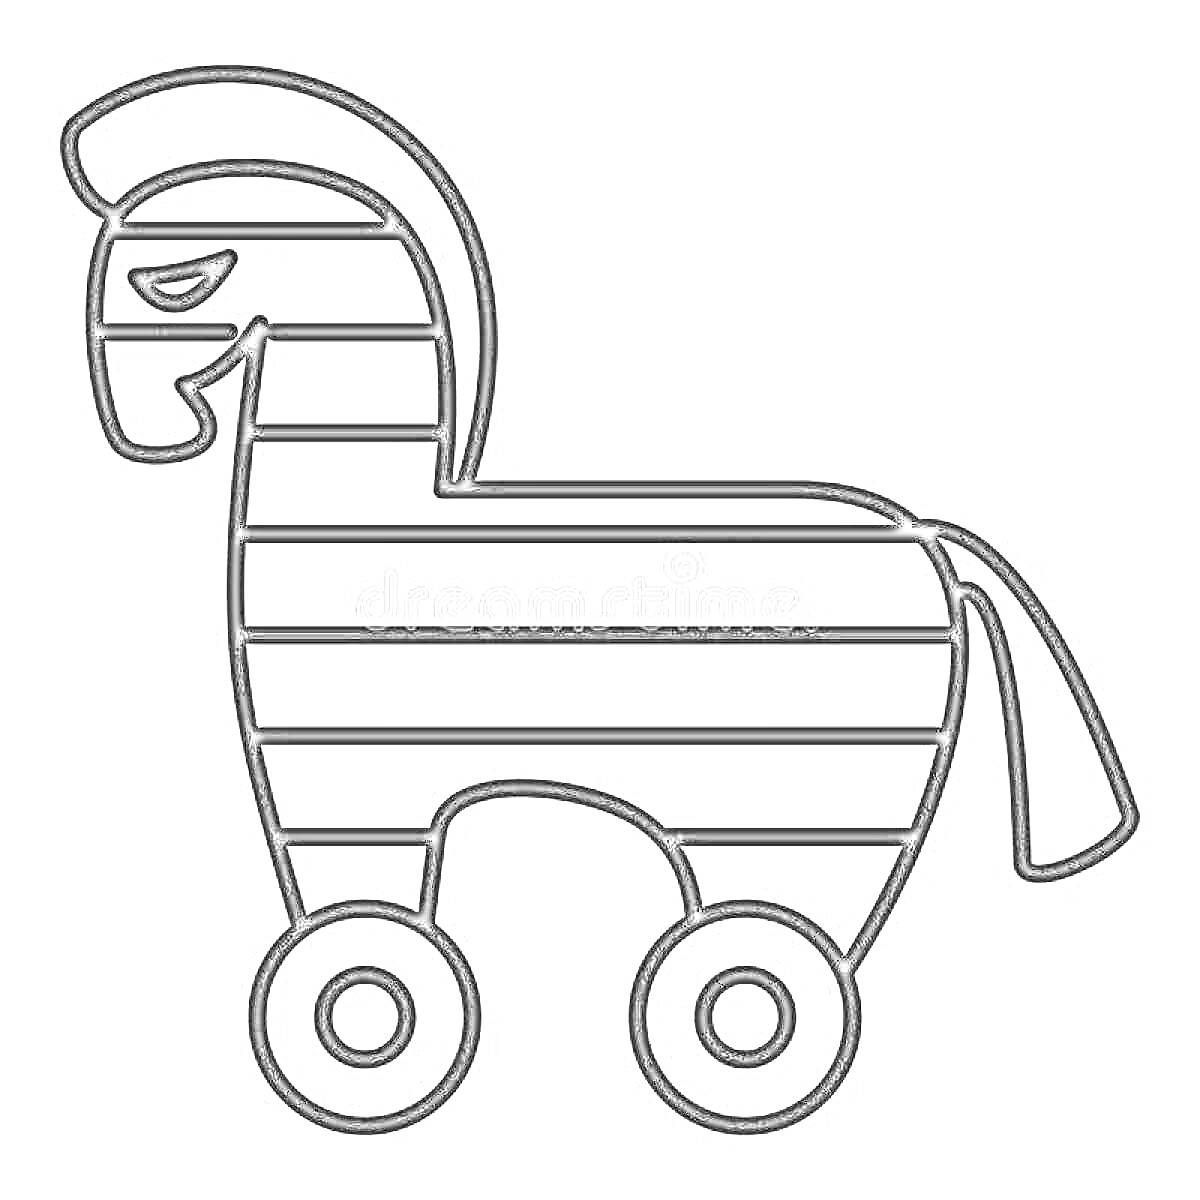 Раскраска Троянский конь с колесами и полосатым корпусом